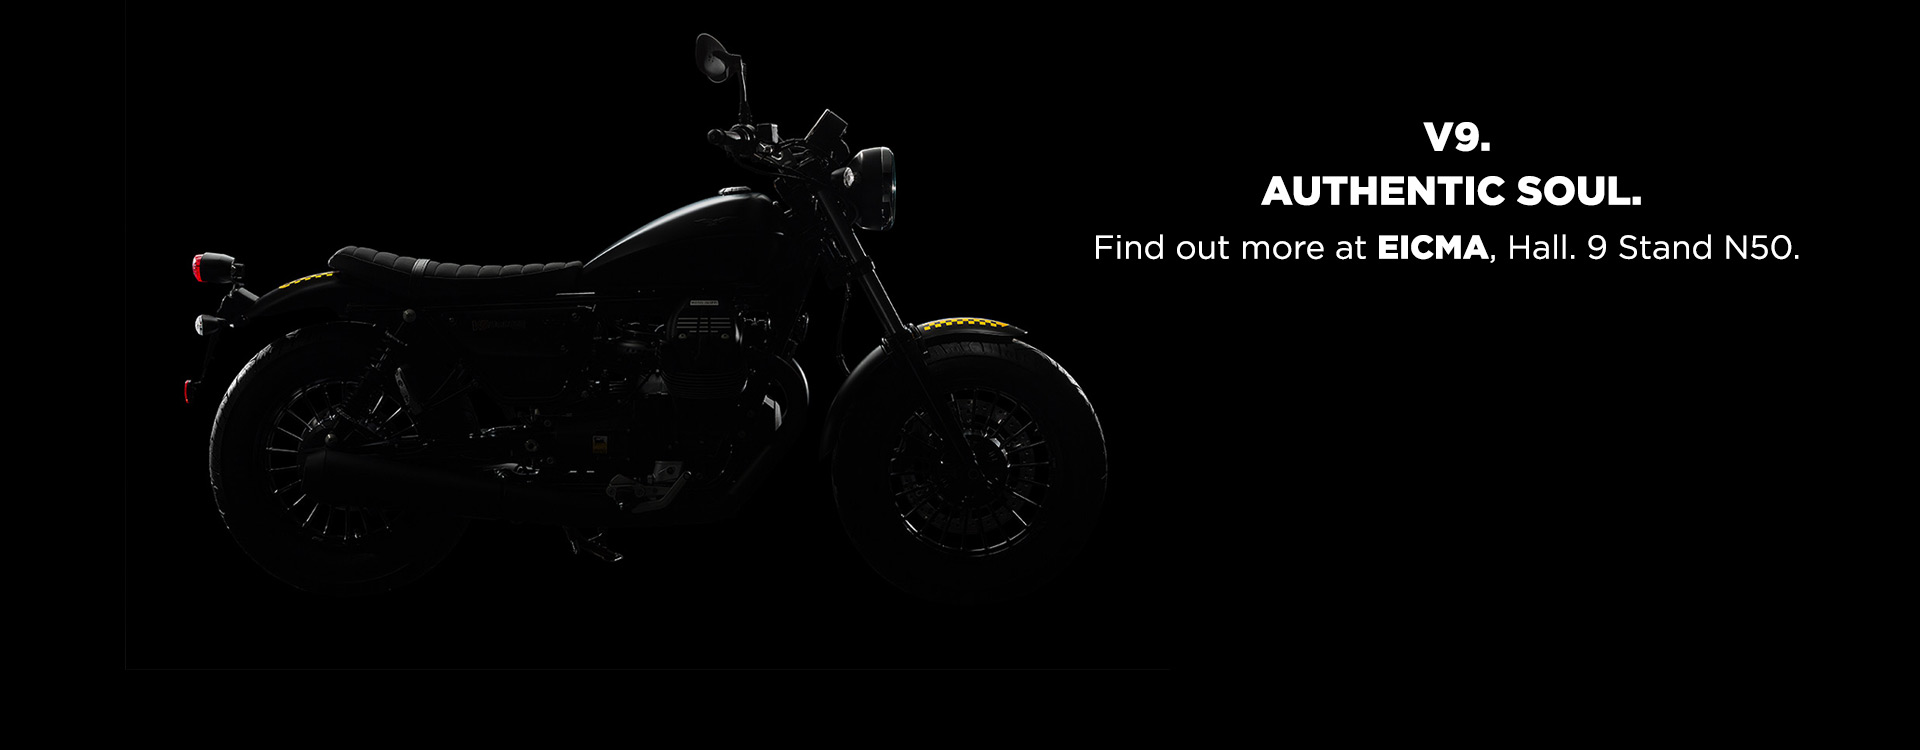 Moto Guzzi V9 revealed